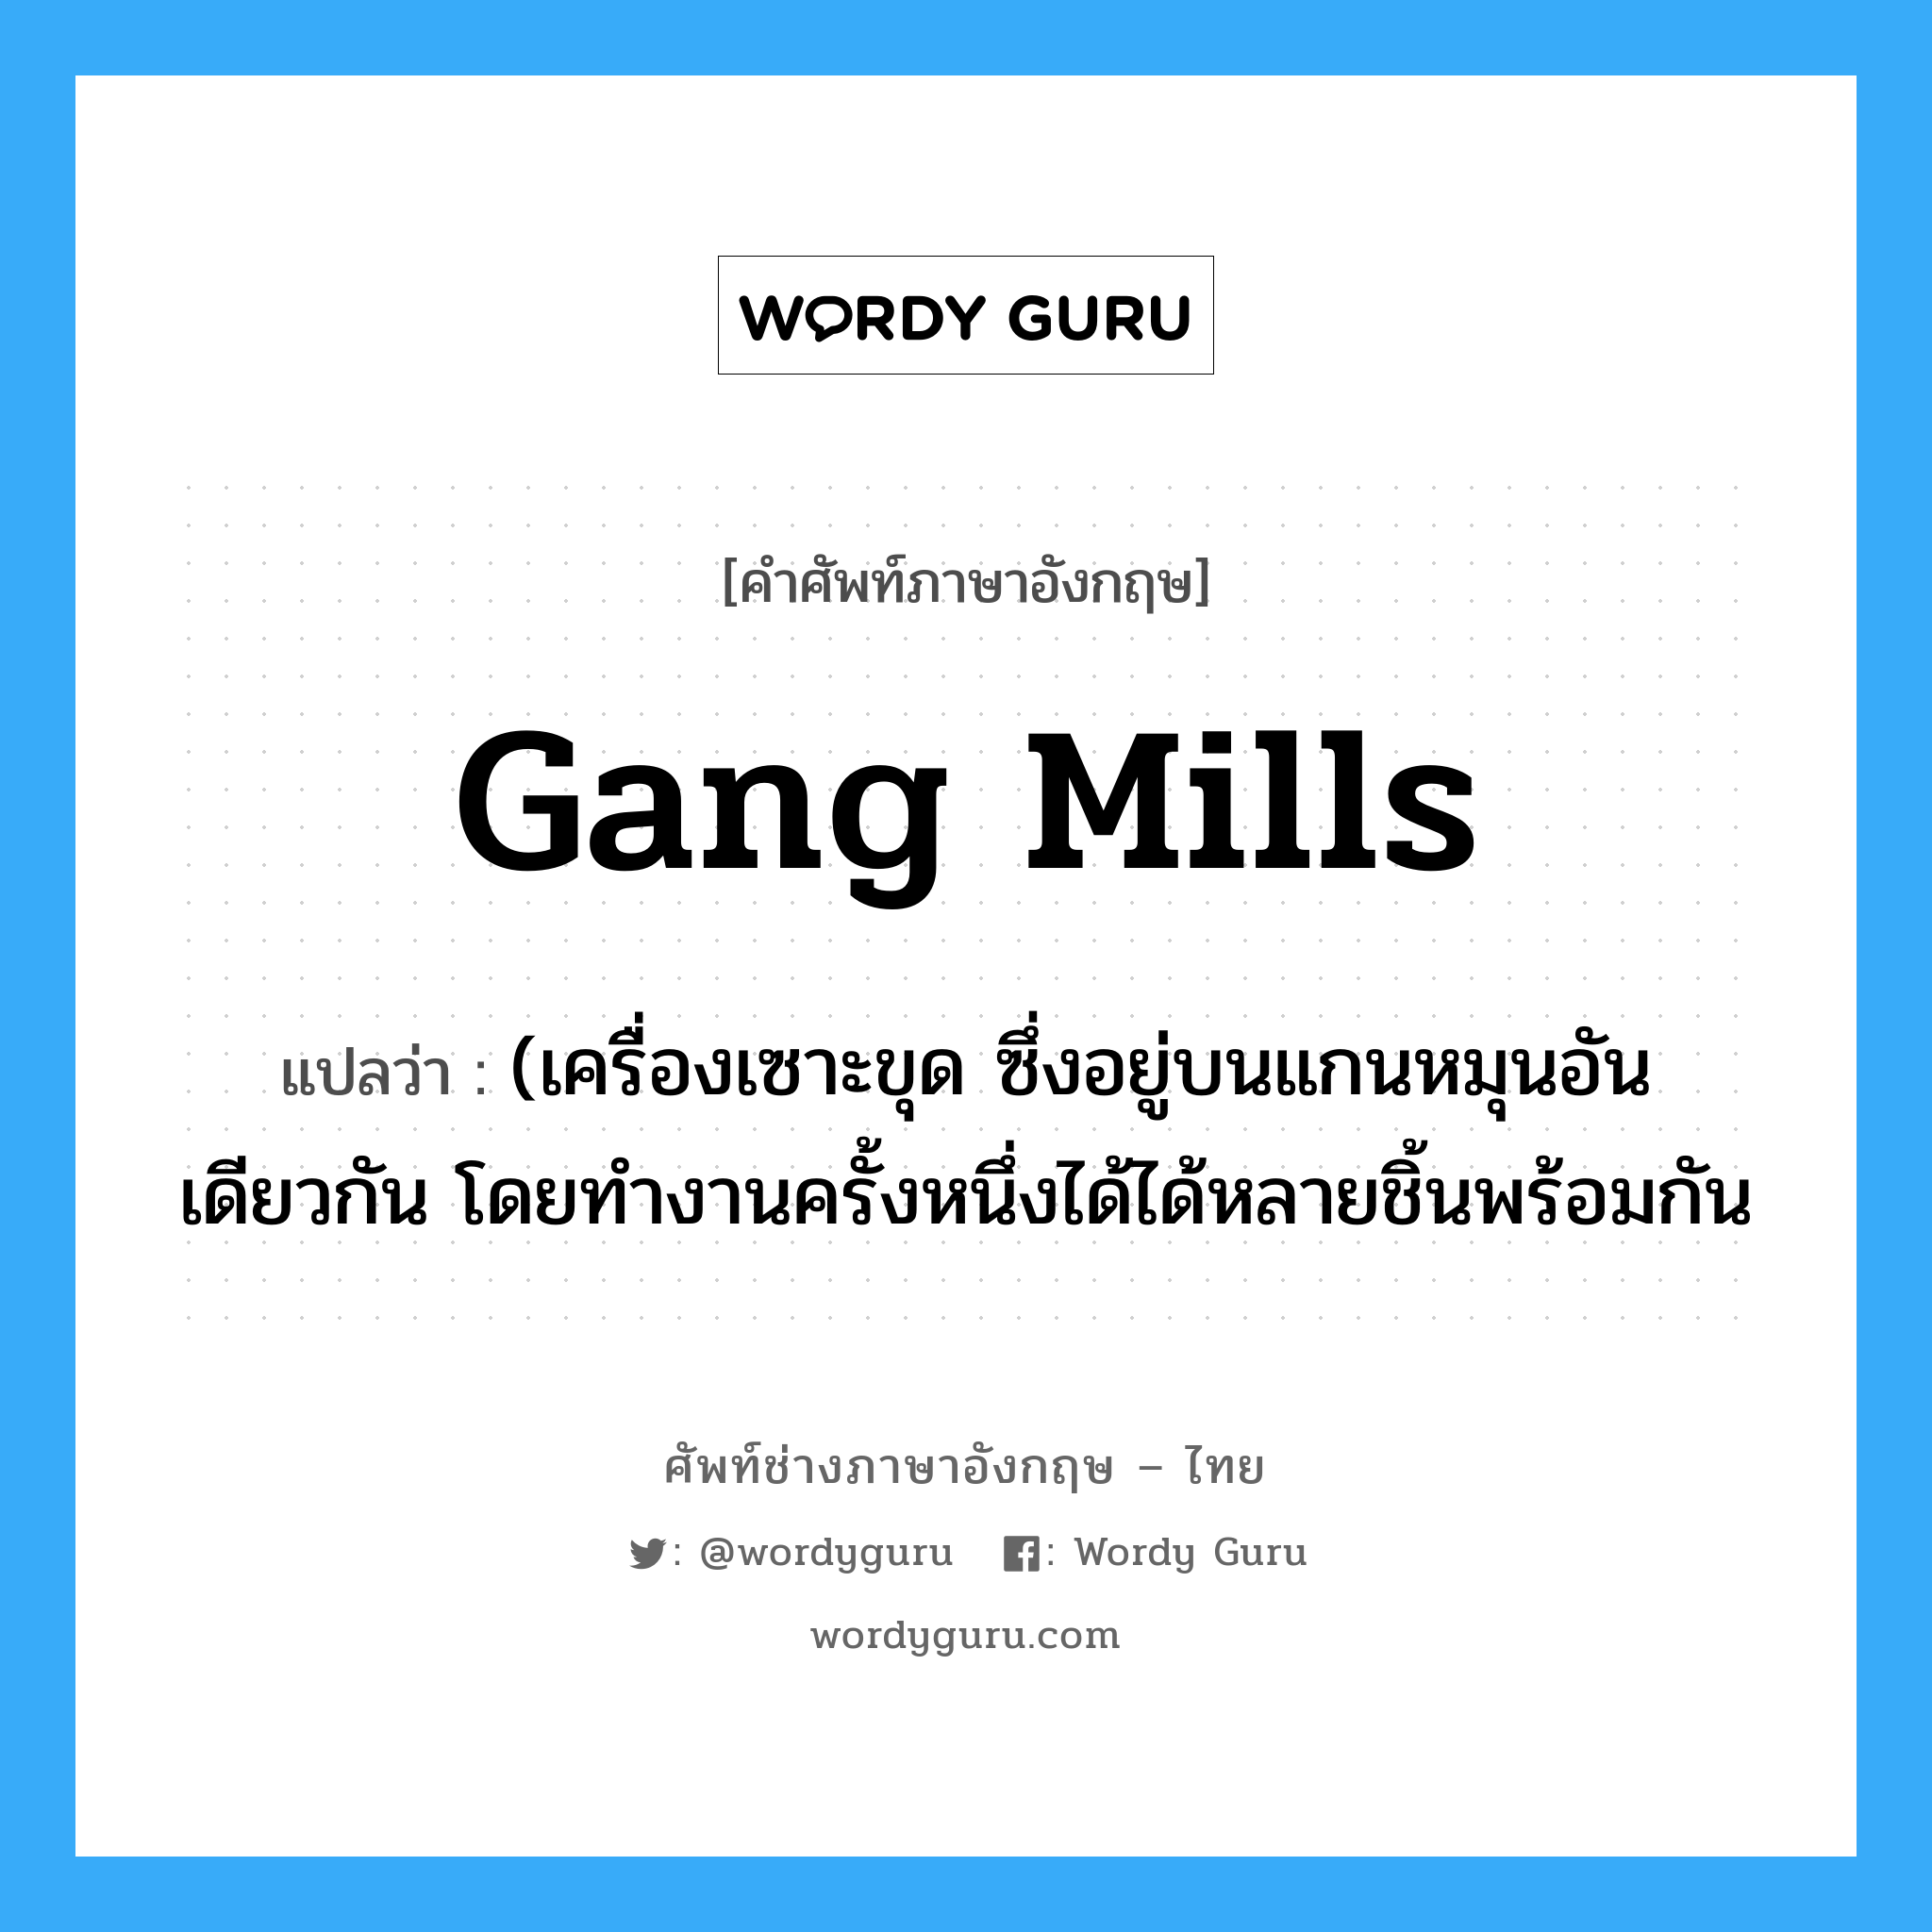 gang mills แปลว่า?, คำศัพท์ช่างภาษาอังกฤษ - ไทย gang mills คำศัพท์ภาษาอังกฤษ gang mills แปลว่า (เครื่องเซาะขุด ซึ่งอยู่บนแกนหมุนอันเดียวกัน โดยทำงานครั้งหนึ่งได้ได้หลายชิ้นพร้อมกัน